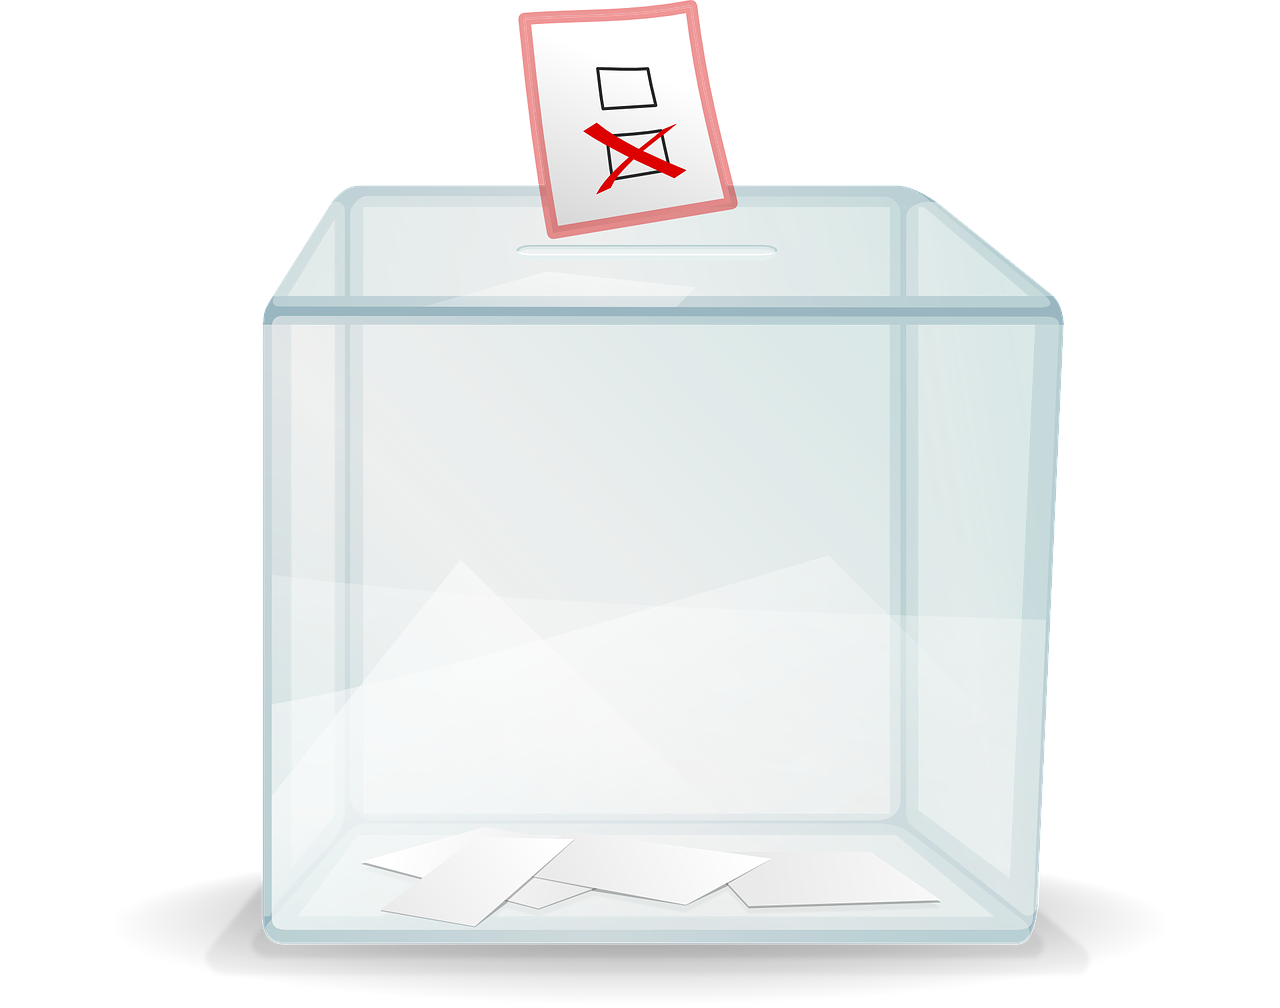 A ballot box with votes